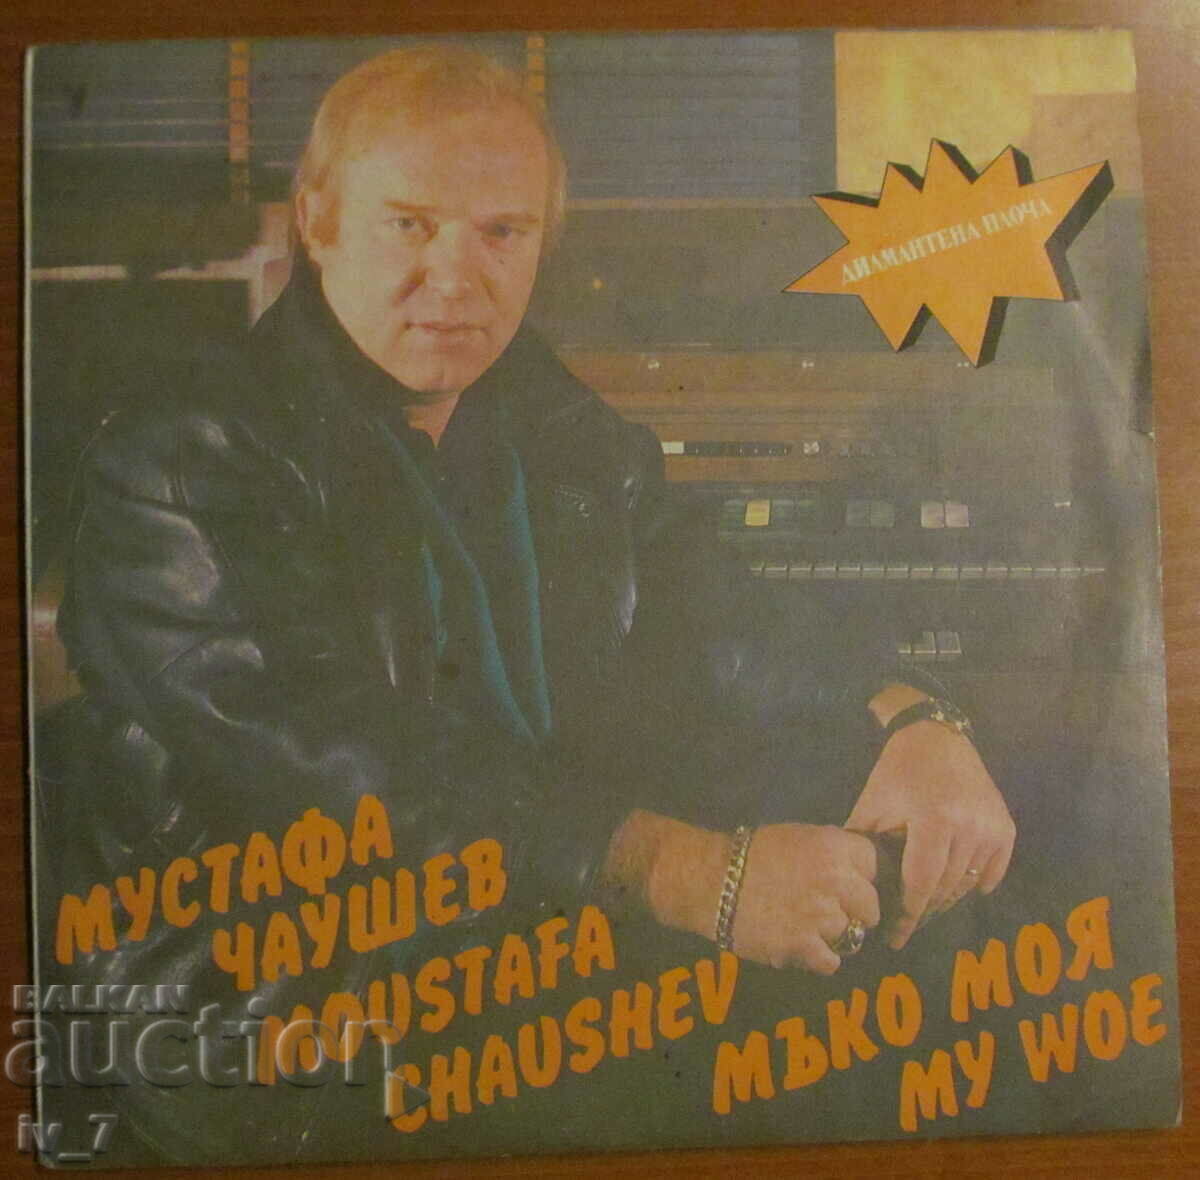 RECORD - MUSTAFA CHAUSHEV - MY SOFT, large format